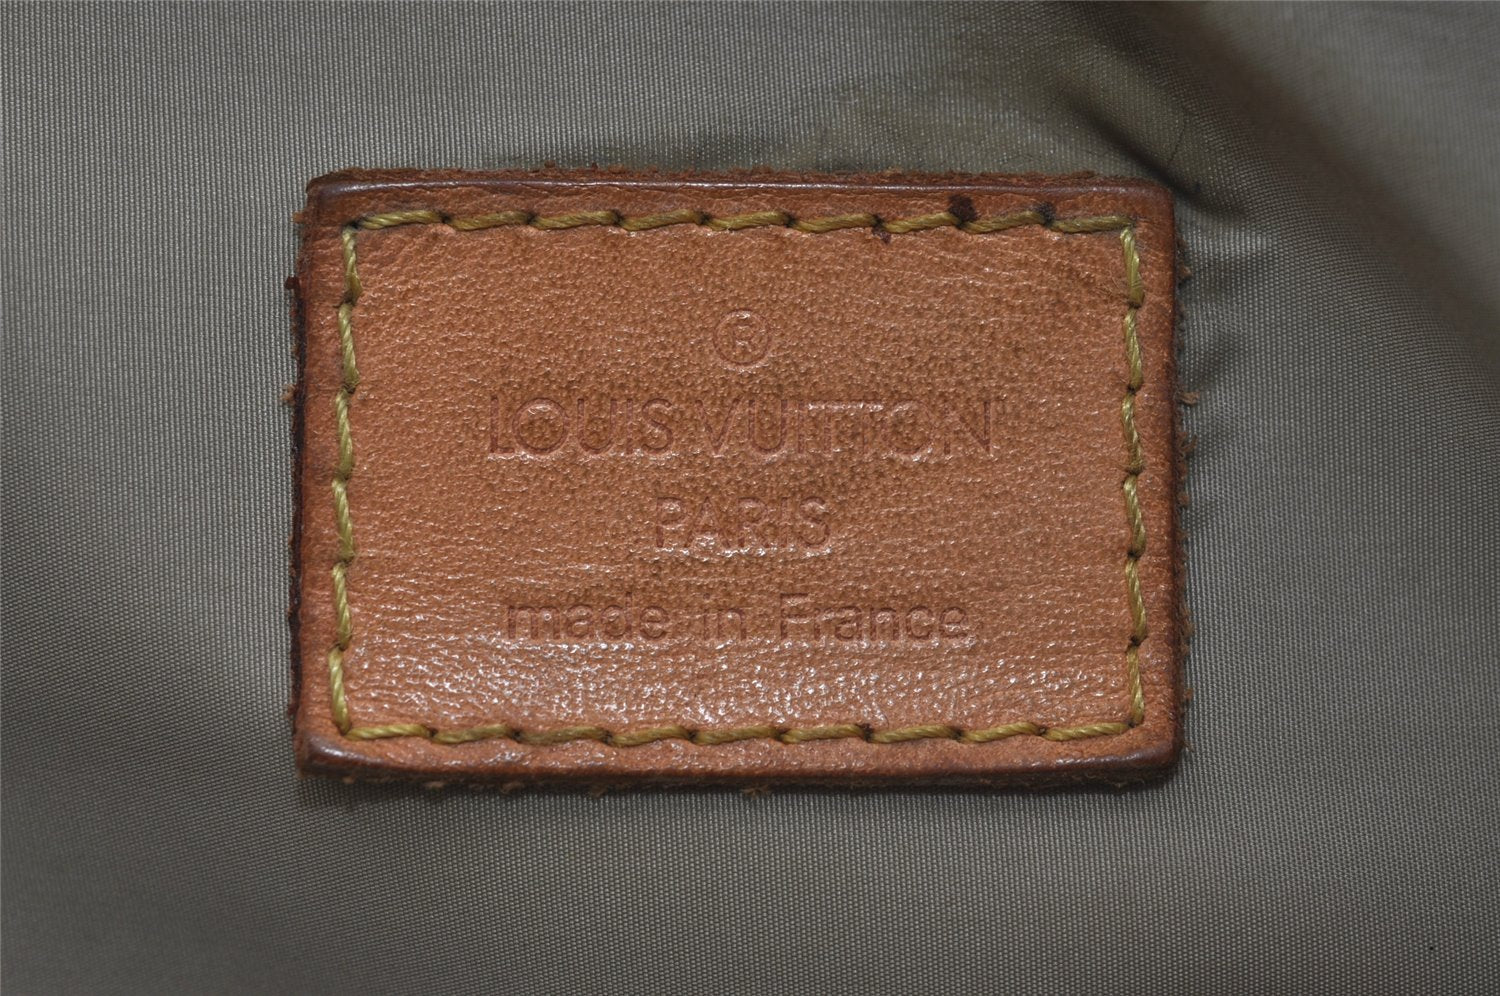 Authentic Louis Vuitton Damier Geant Arche Waist Cross Bag Brown M93022 LV 6160J